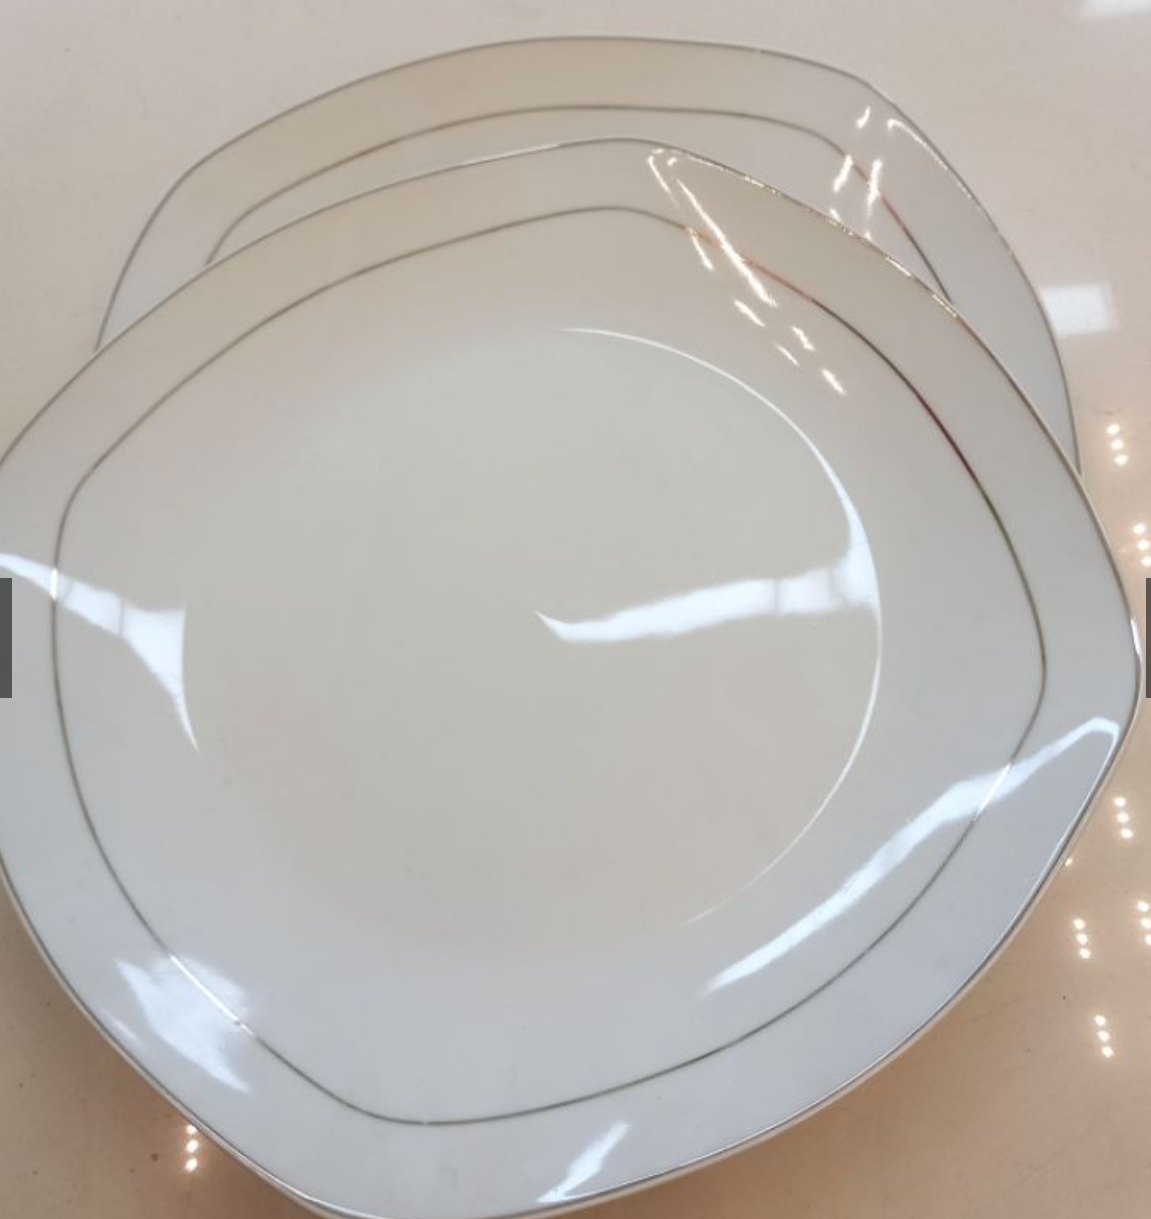 Piring keramik putih